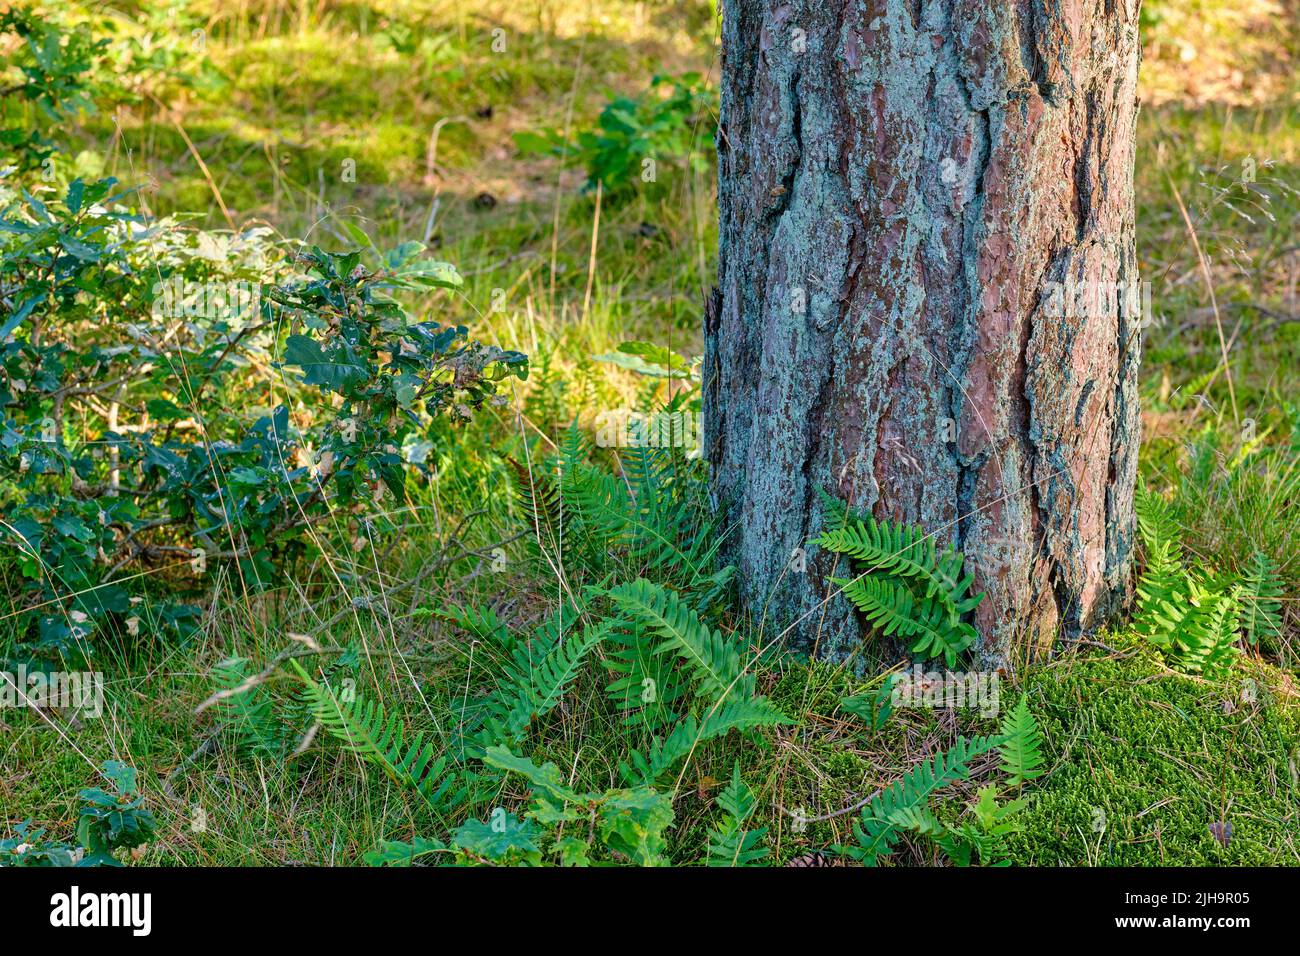 Nahaufnahme eines großen Baumes im Wald mit grünem Moos im Freien in der Natur. Ein großer Baumstumpf im Wald mit Details von Rinde und lebendigen Pflanzen, Sträuchern und Stockfoto